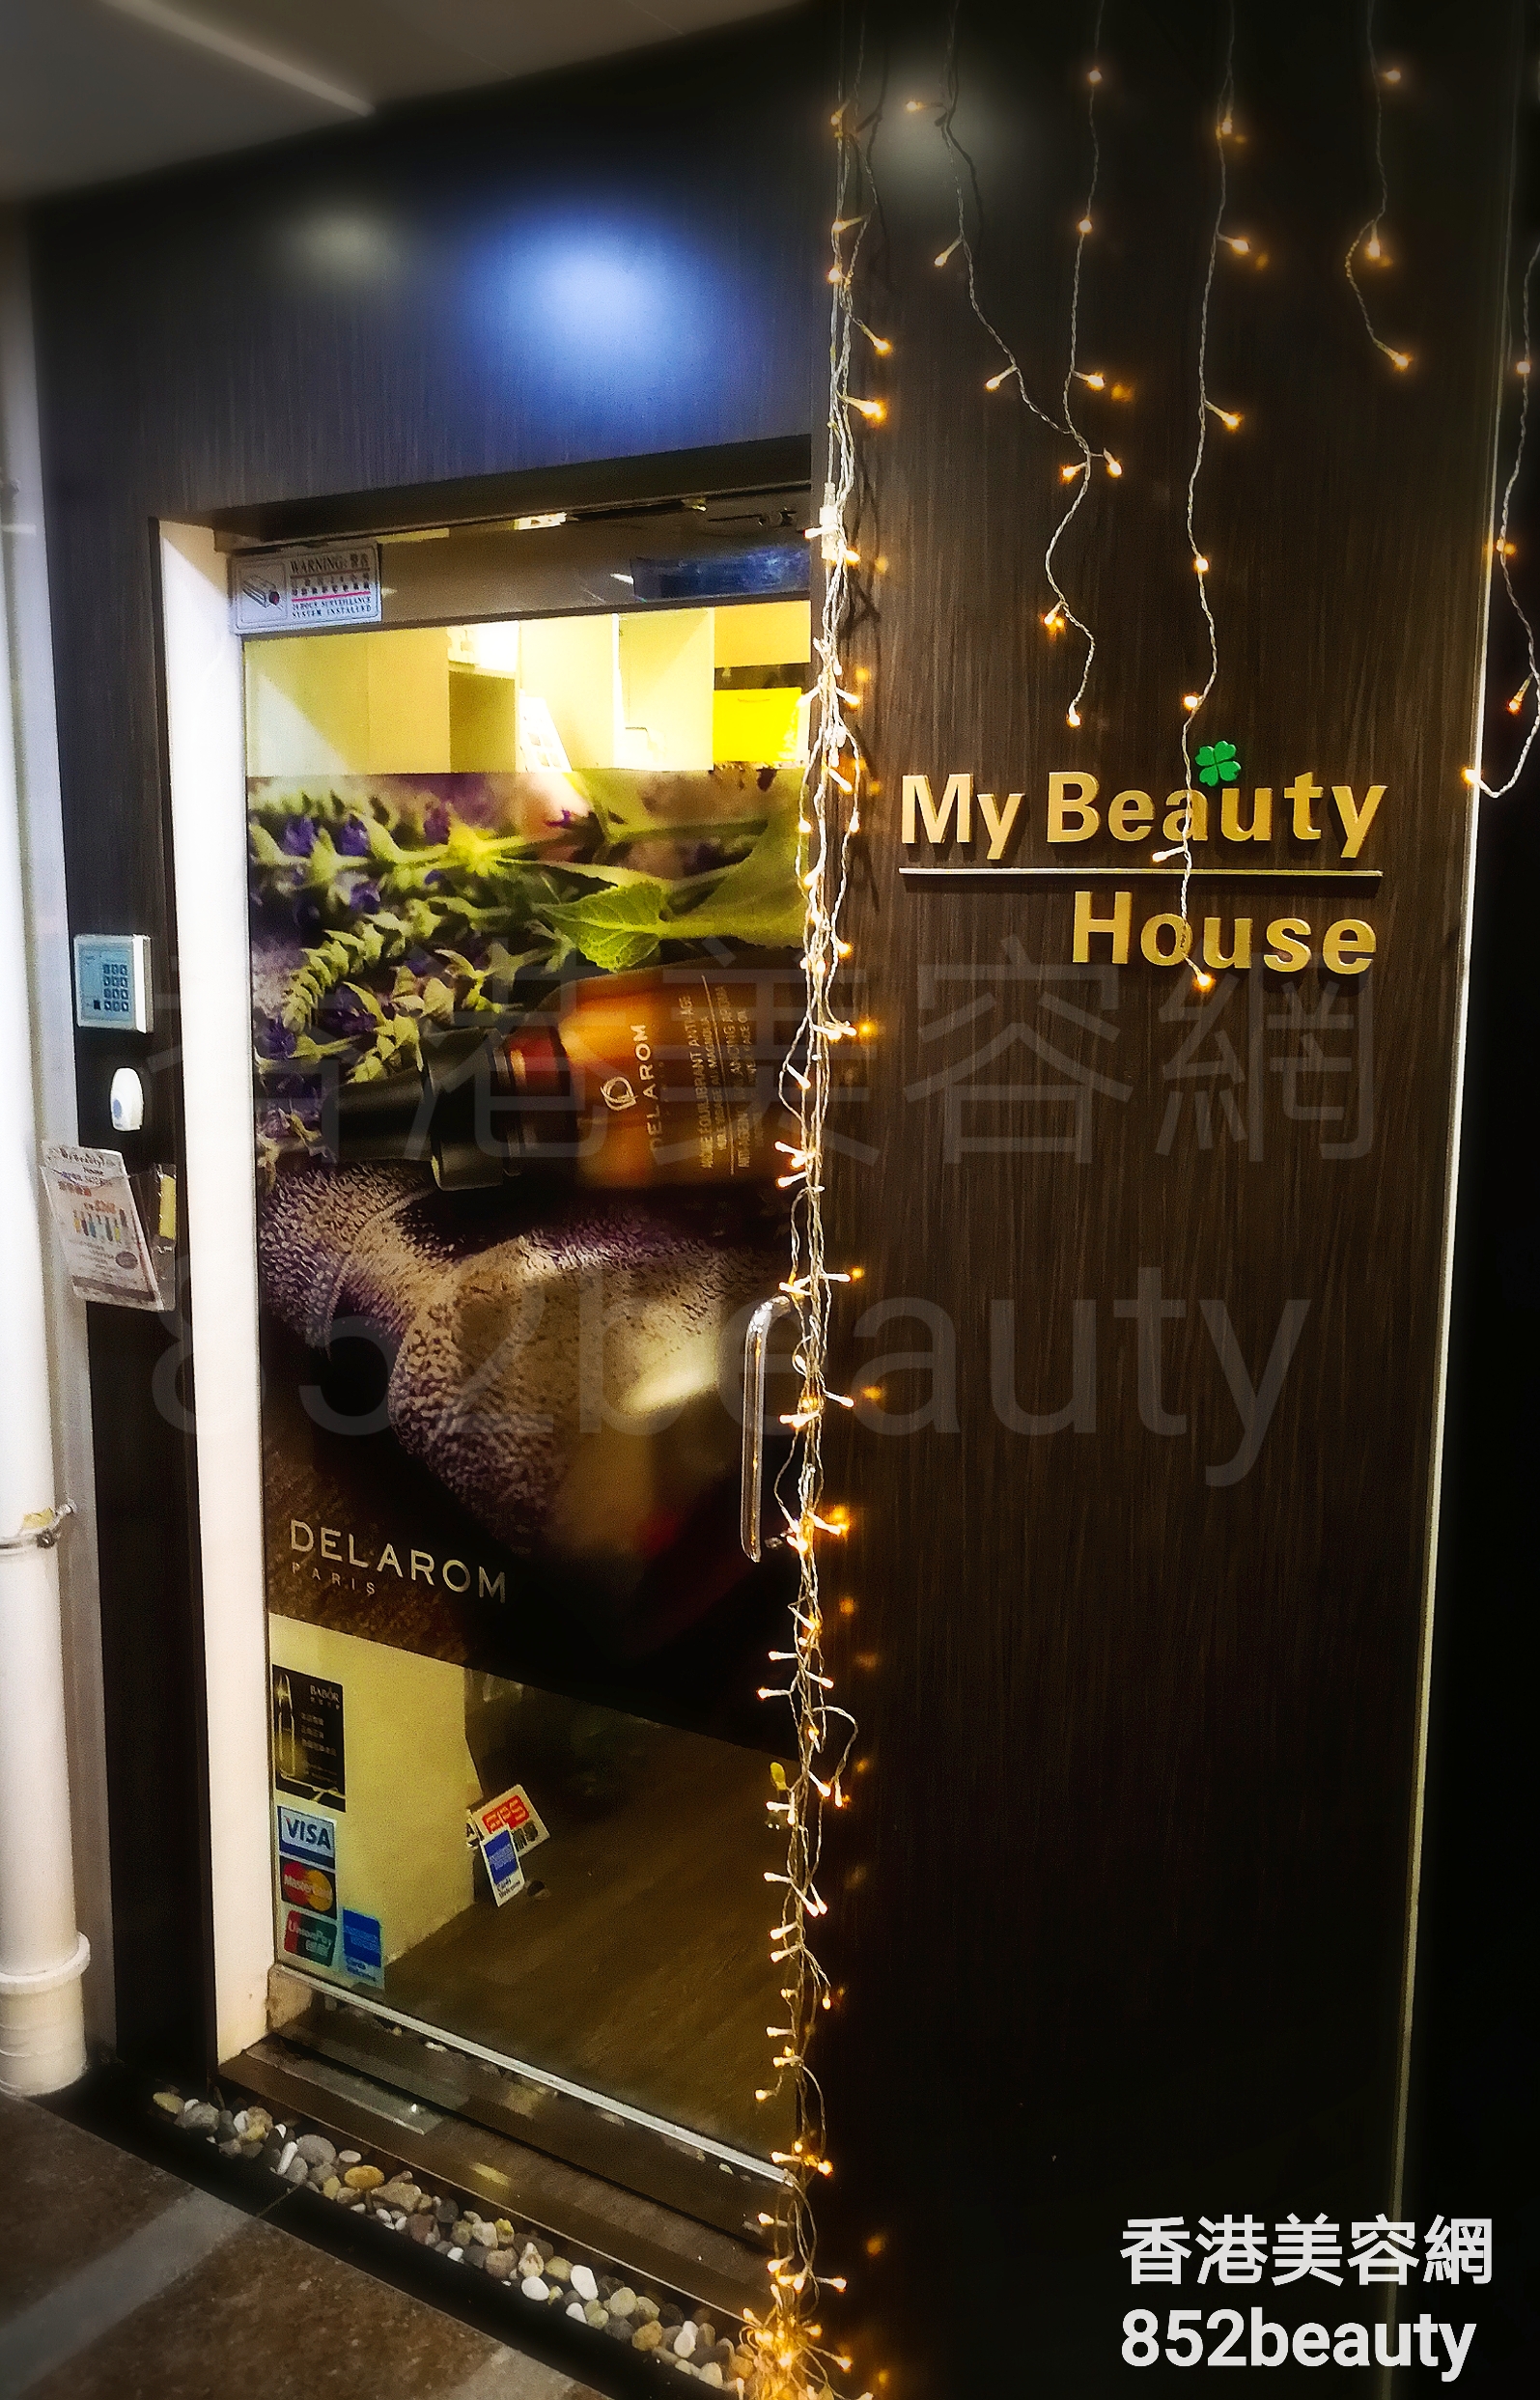 香港美容網 Hong Kong Beauty Salon 美容院 / 美容師: My Beauty House